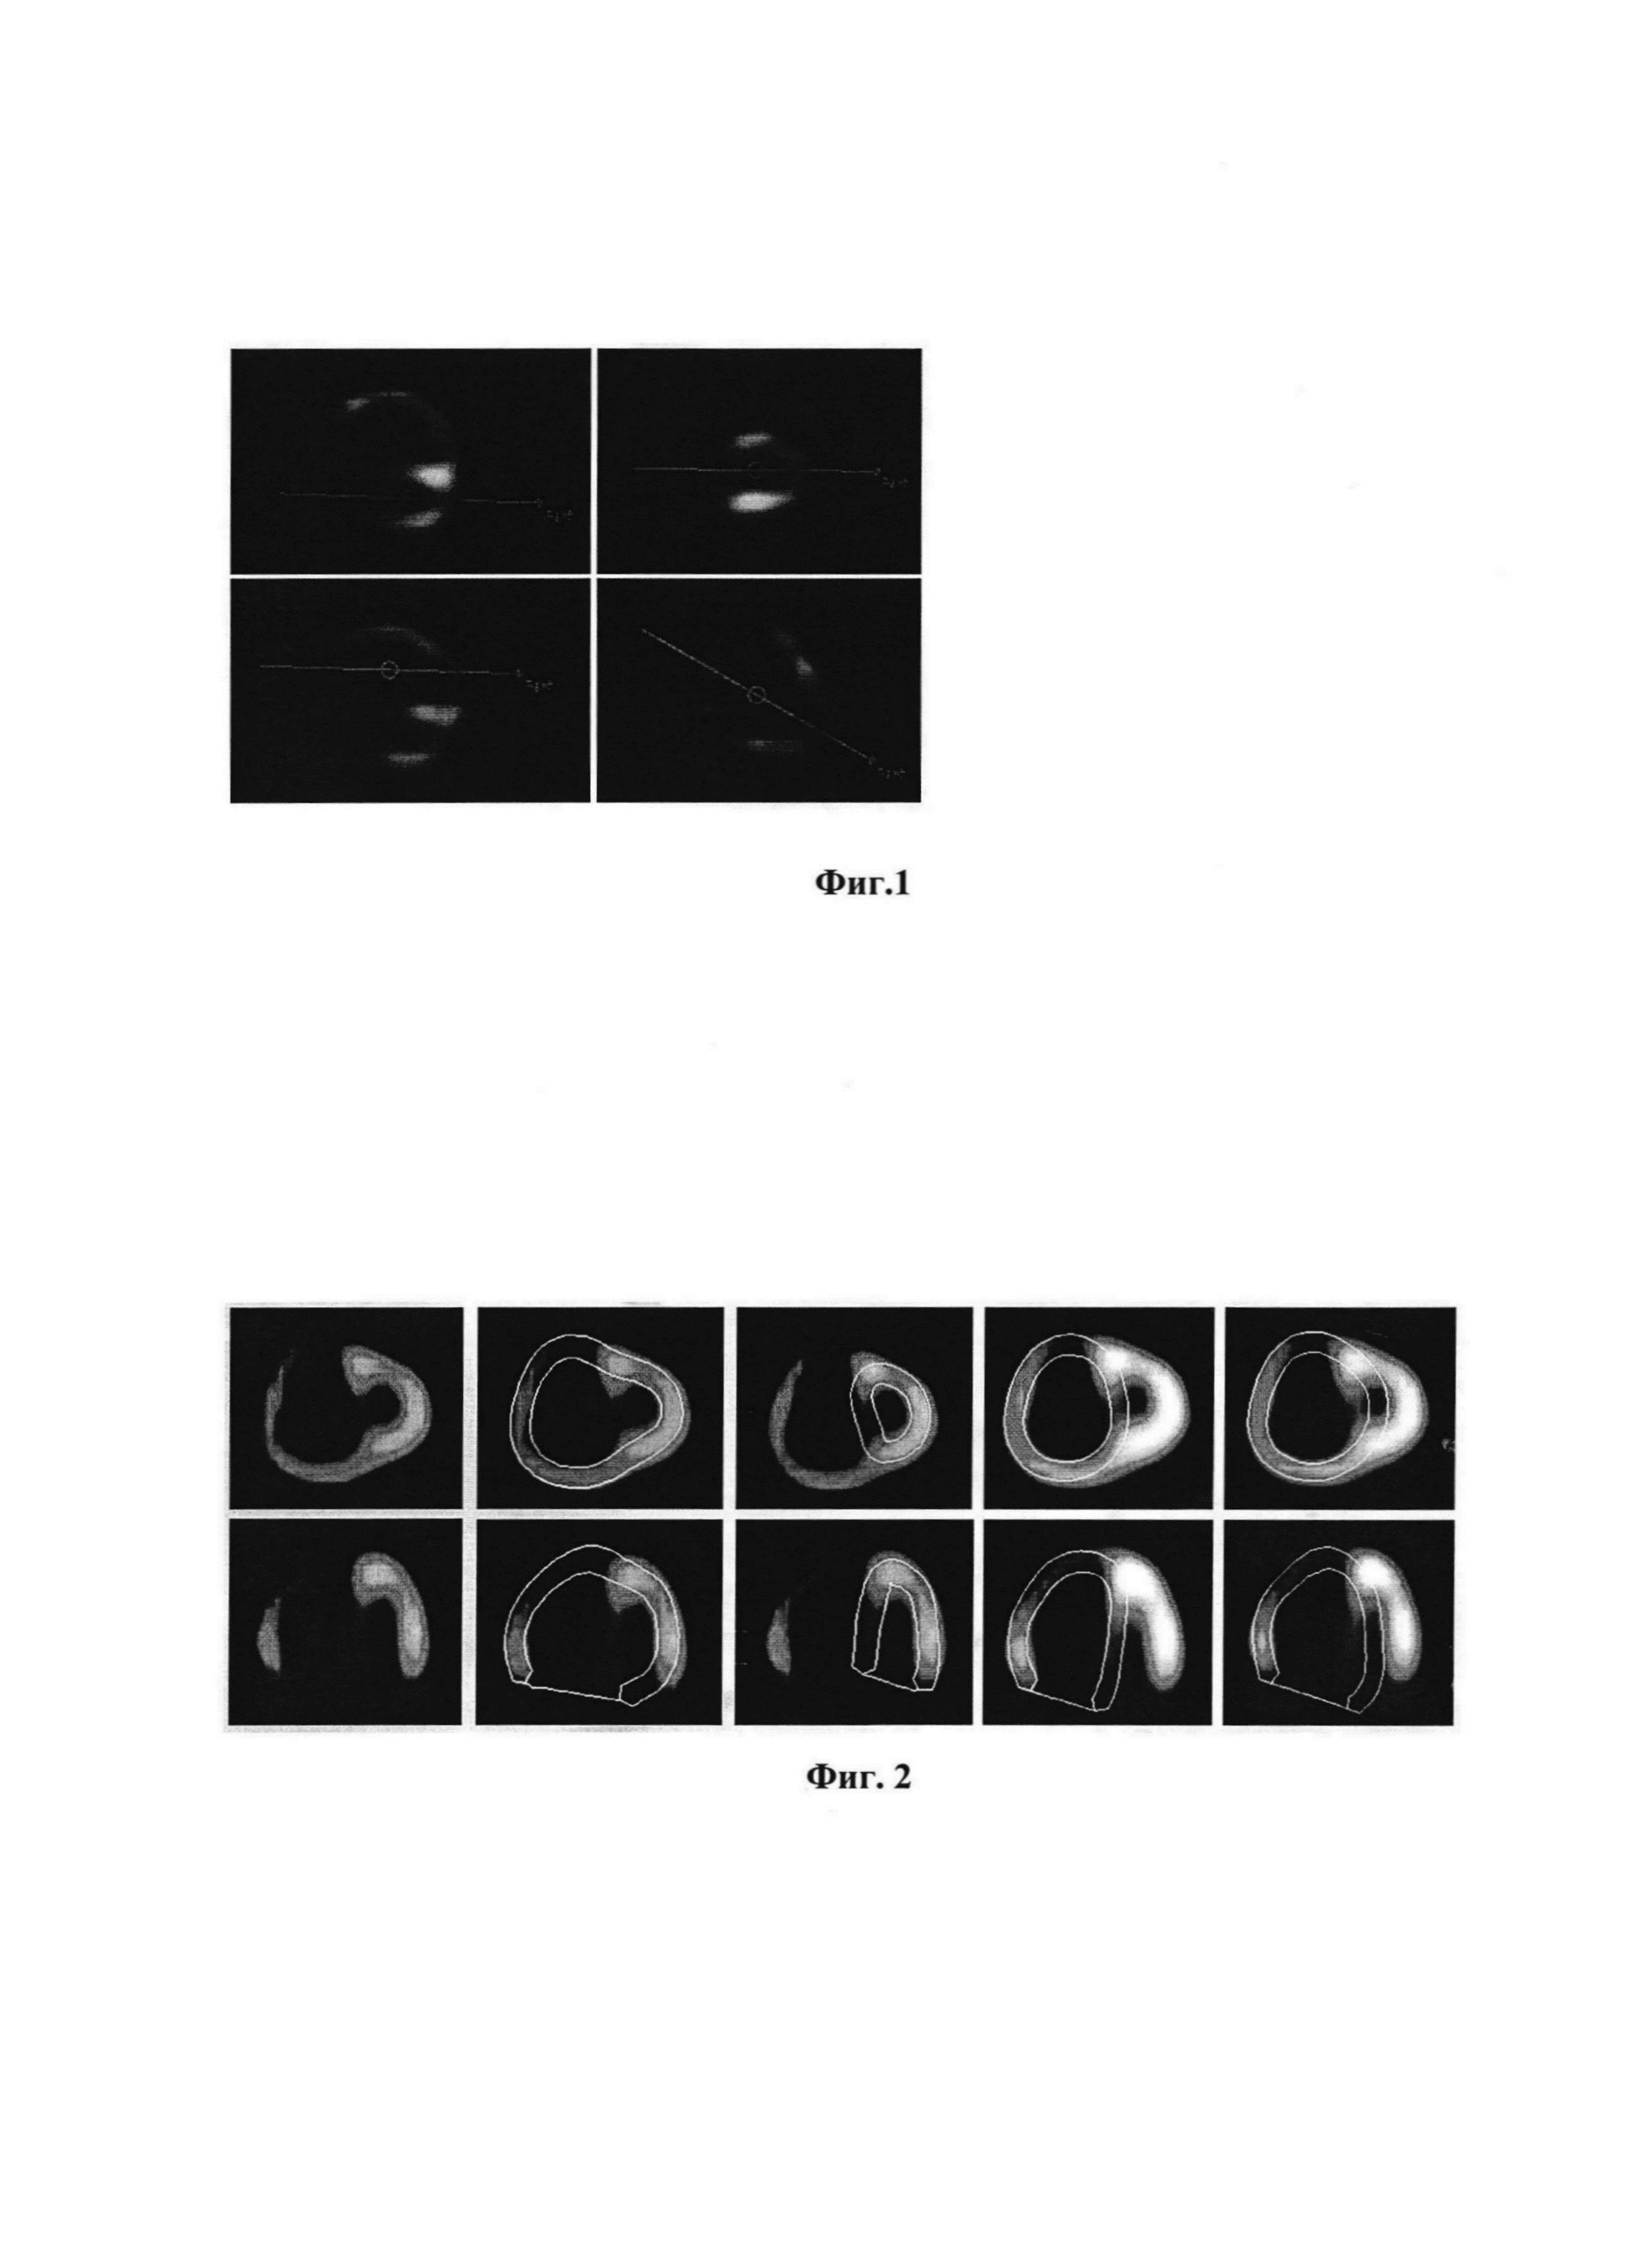 Способ количественной оценки нарушений перфузии миокарда правого желудочка по данным однофотонно-эмиссионной компьютерной томографии